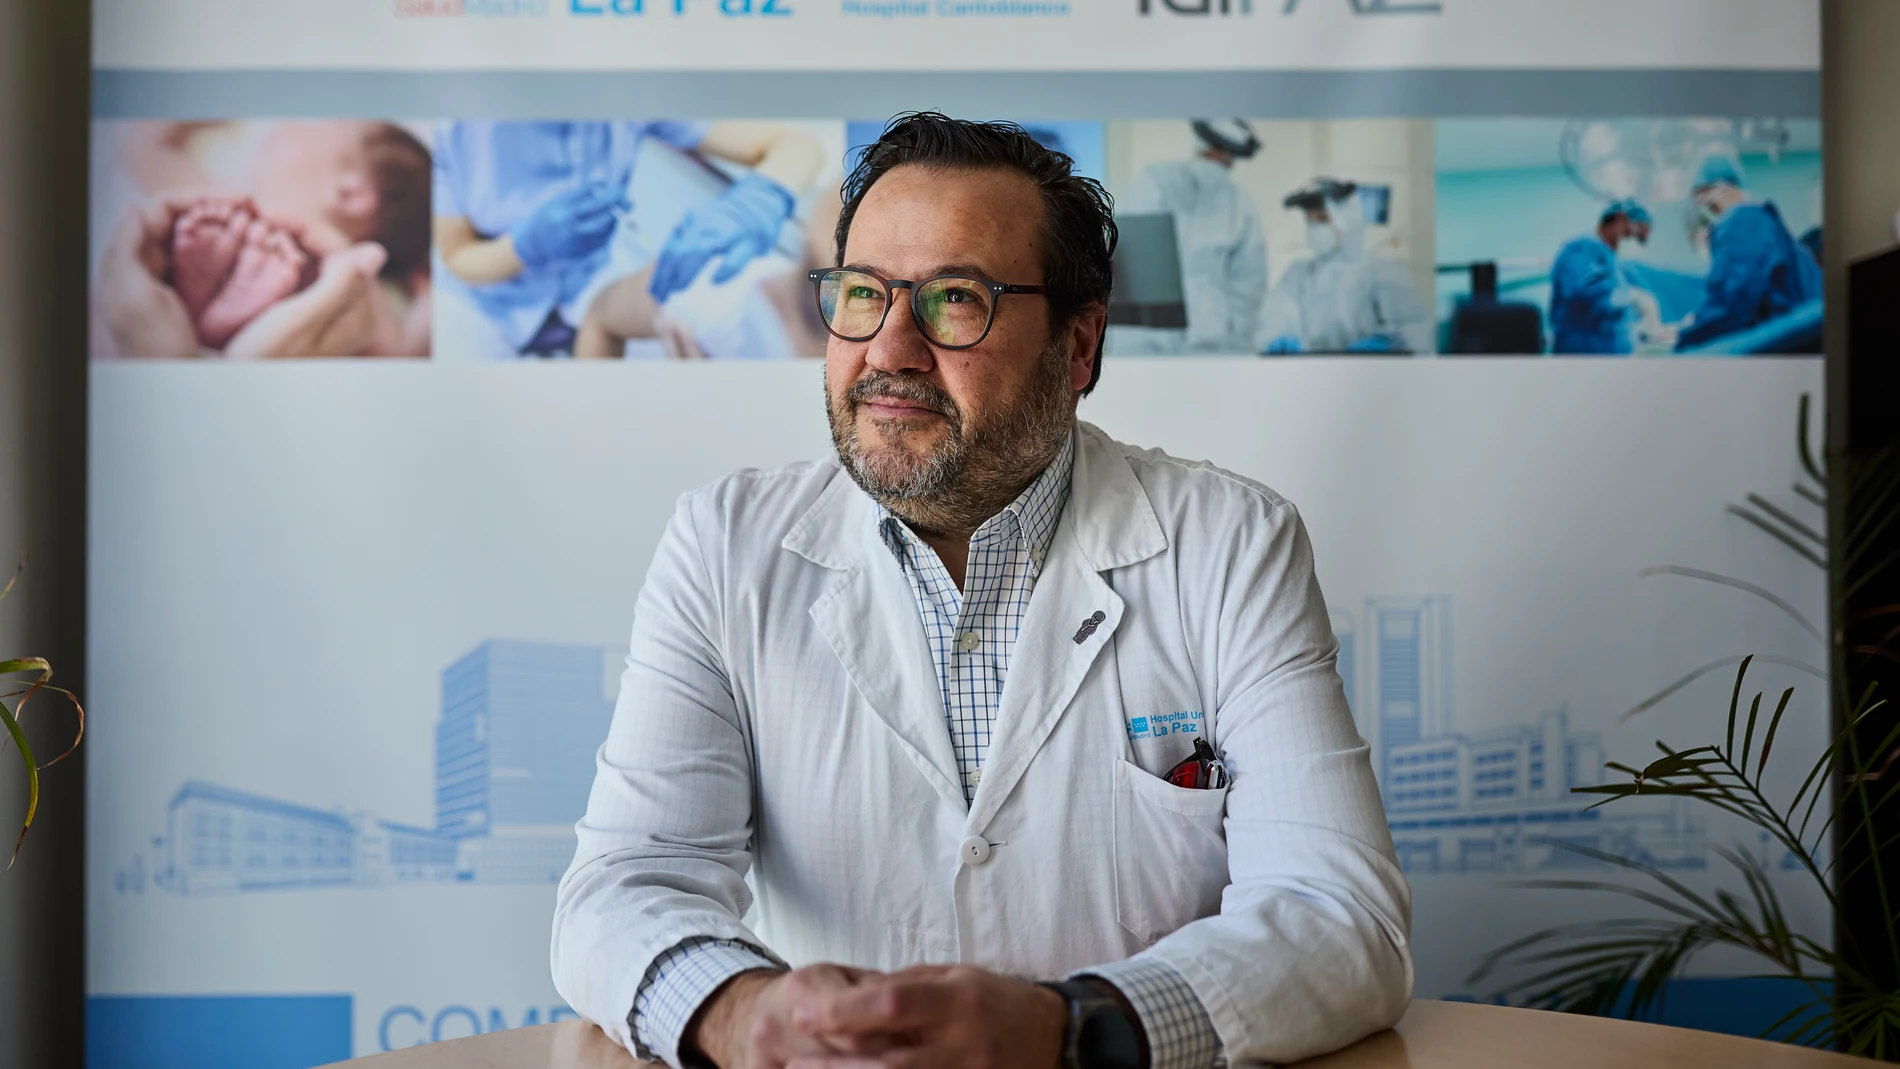 Entrevista con el doctor Álvaro Fernández, jefe del servicio de cirugía vascular del hospital universitario La Paz.